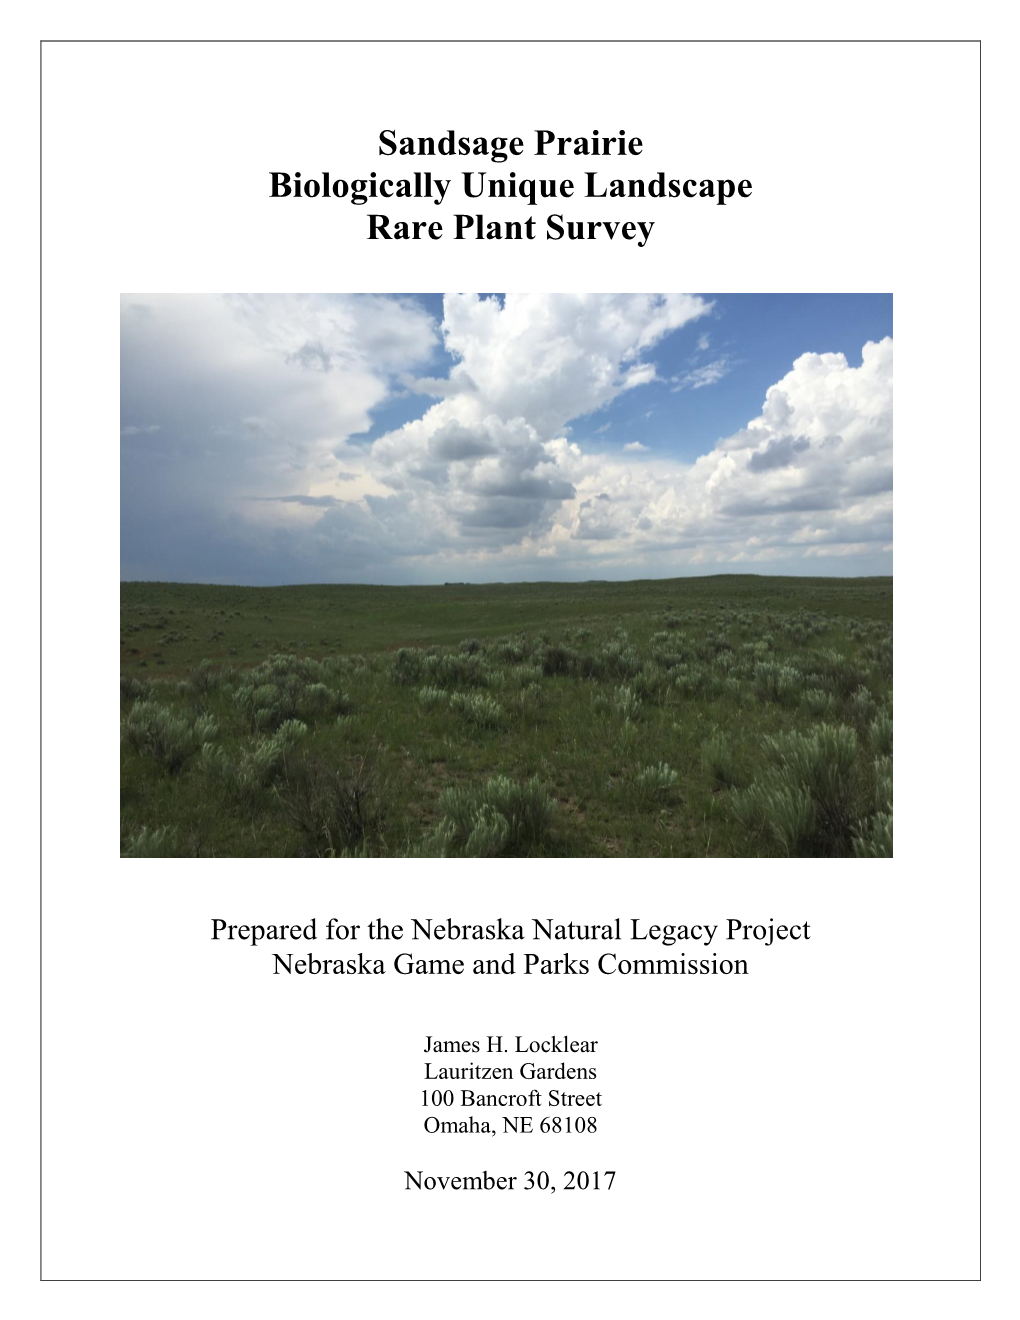 2017 Sandsage Prairie Biologically Unique Landscape Rare Plant Survey